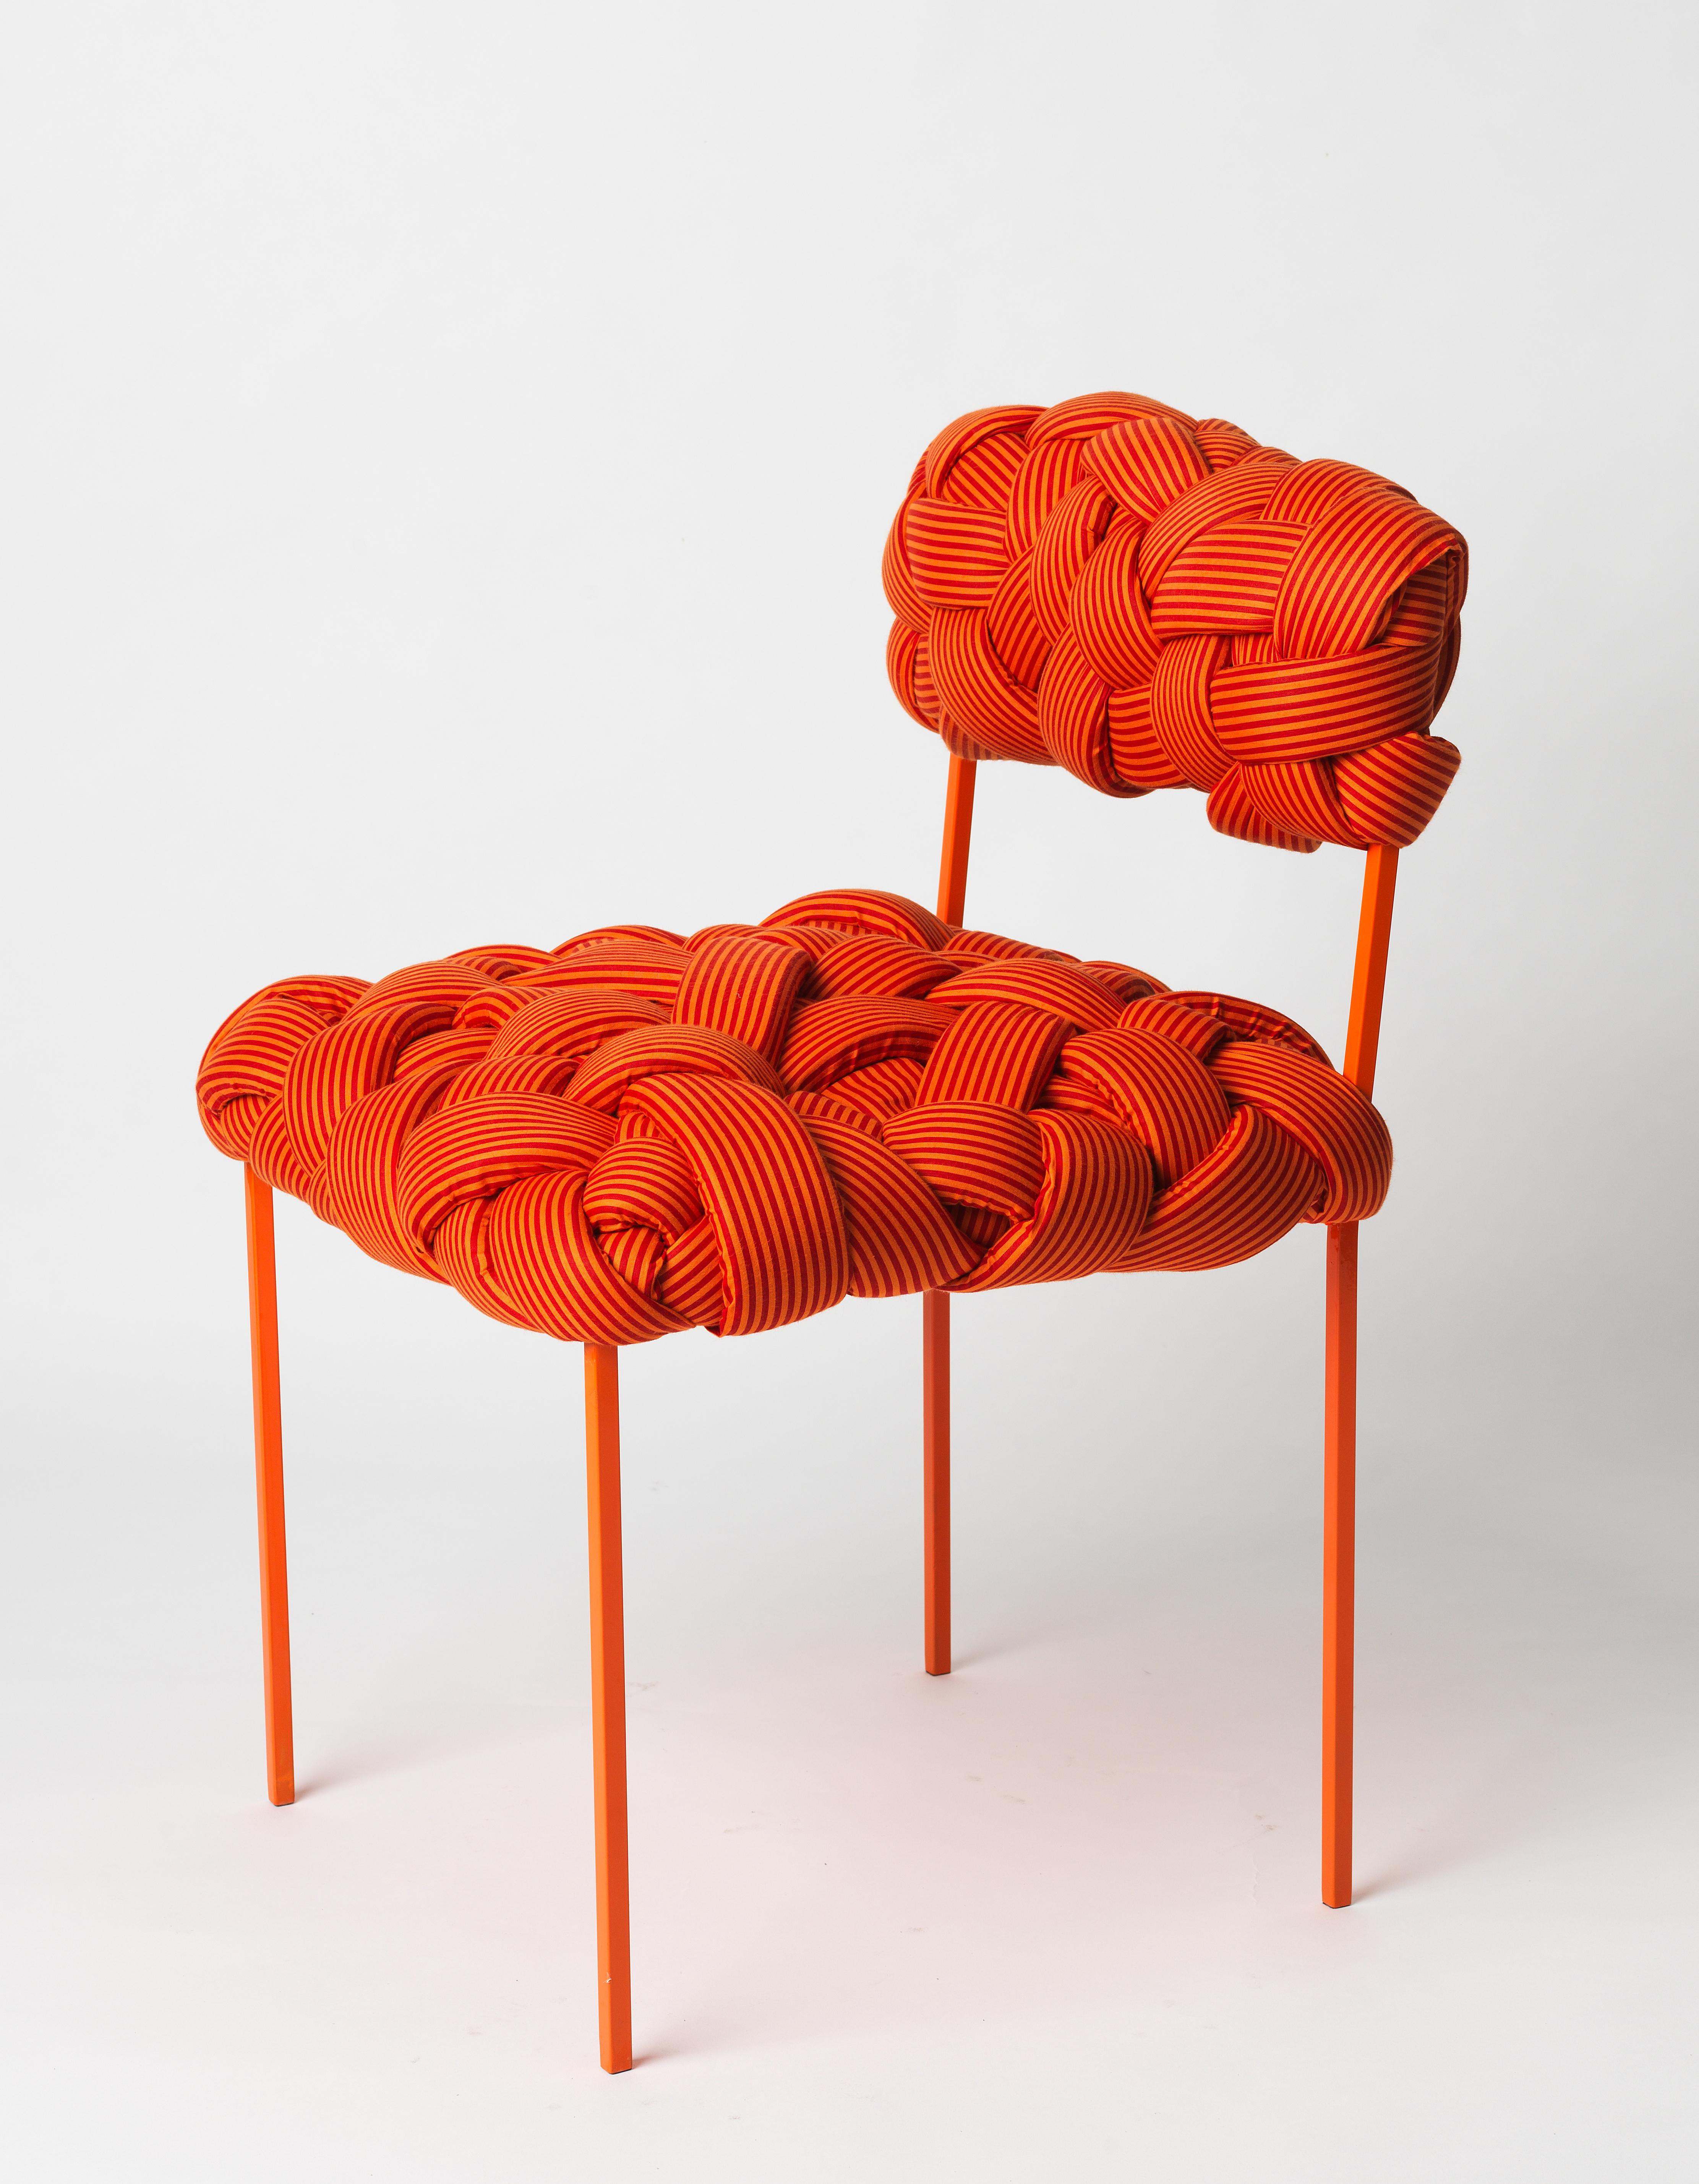 Cette chaise contemporaine fait partie de la collection Cloud, qui a été créée autour du concept des arbres. Ces tabourets et bancs contemporains sont fabriqués avec des bandes de tissu de coton et de mousse, tissées et cousues à la main. Chaque